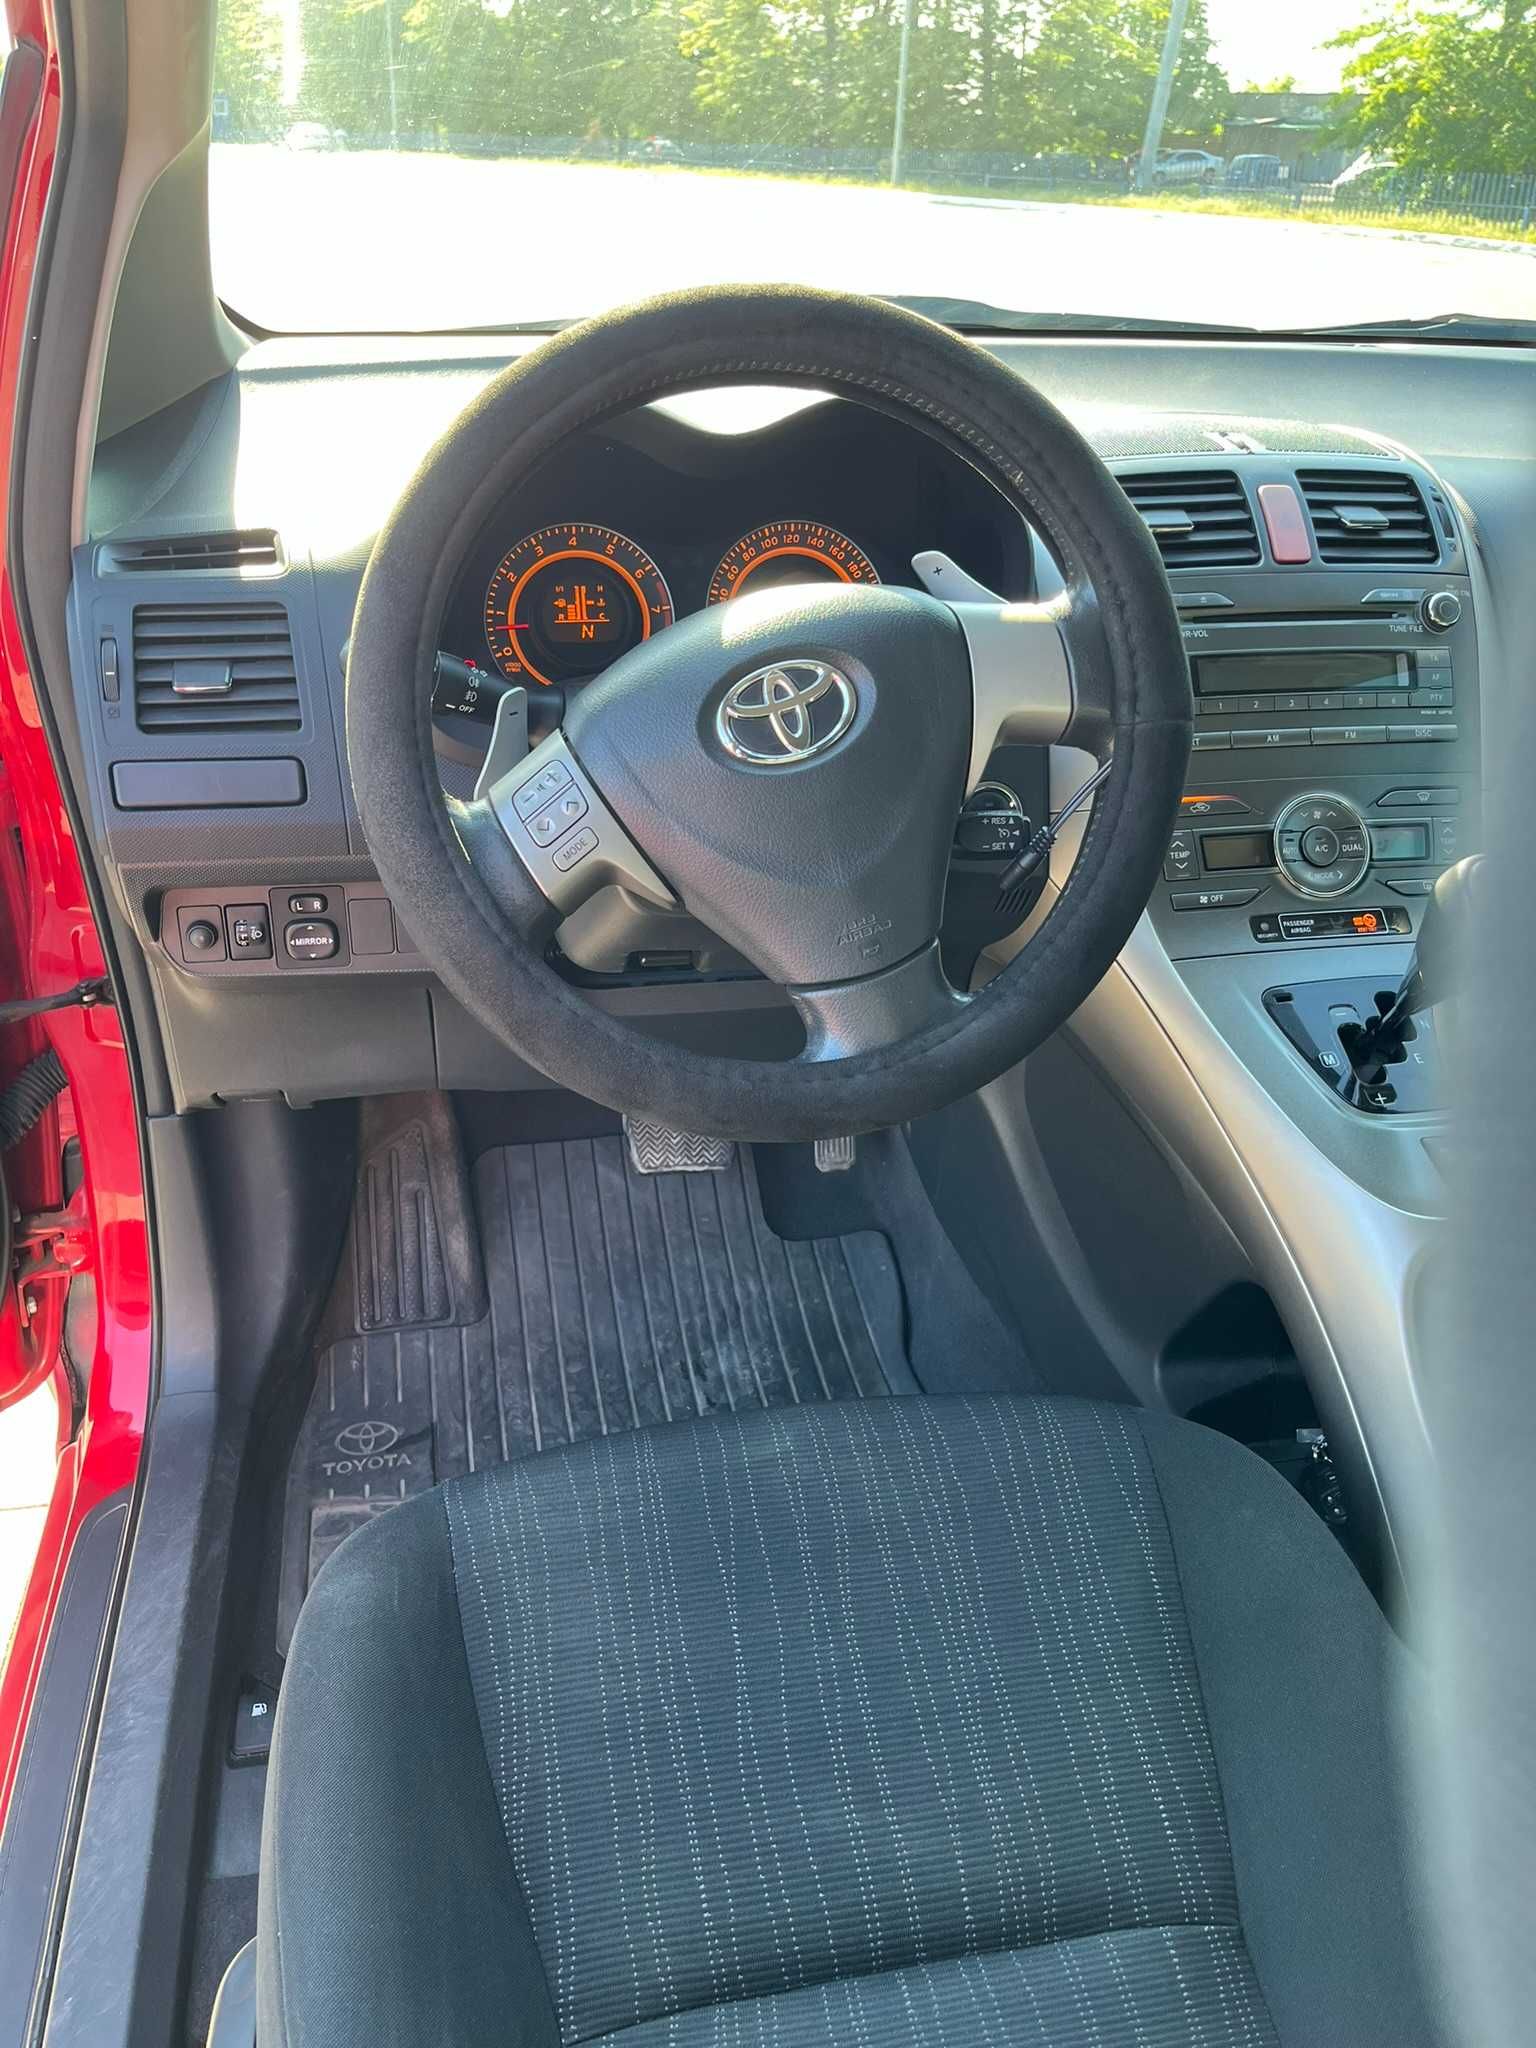 Продам власну Toyota Auris, 2007 р.в.